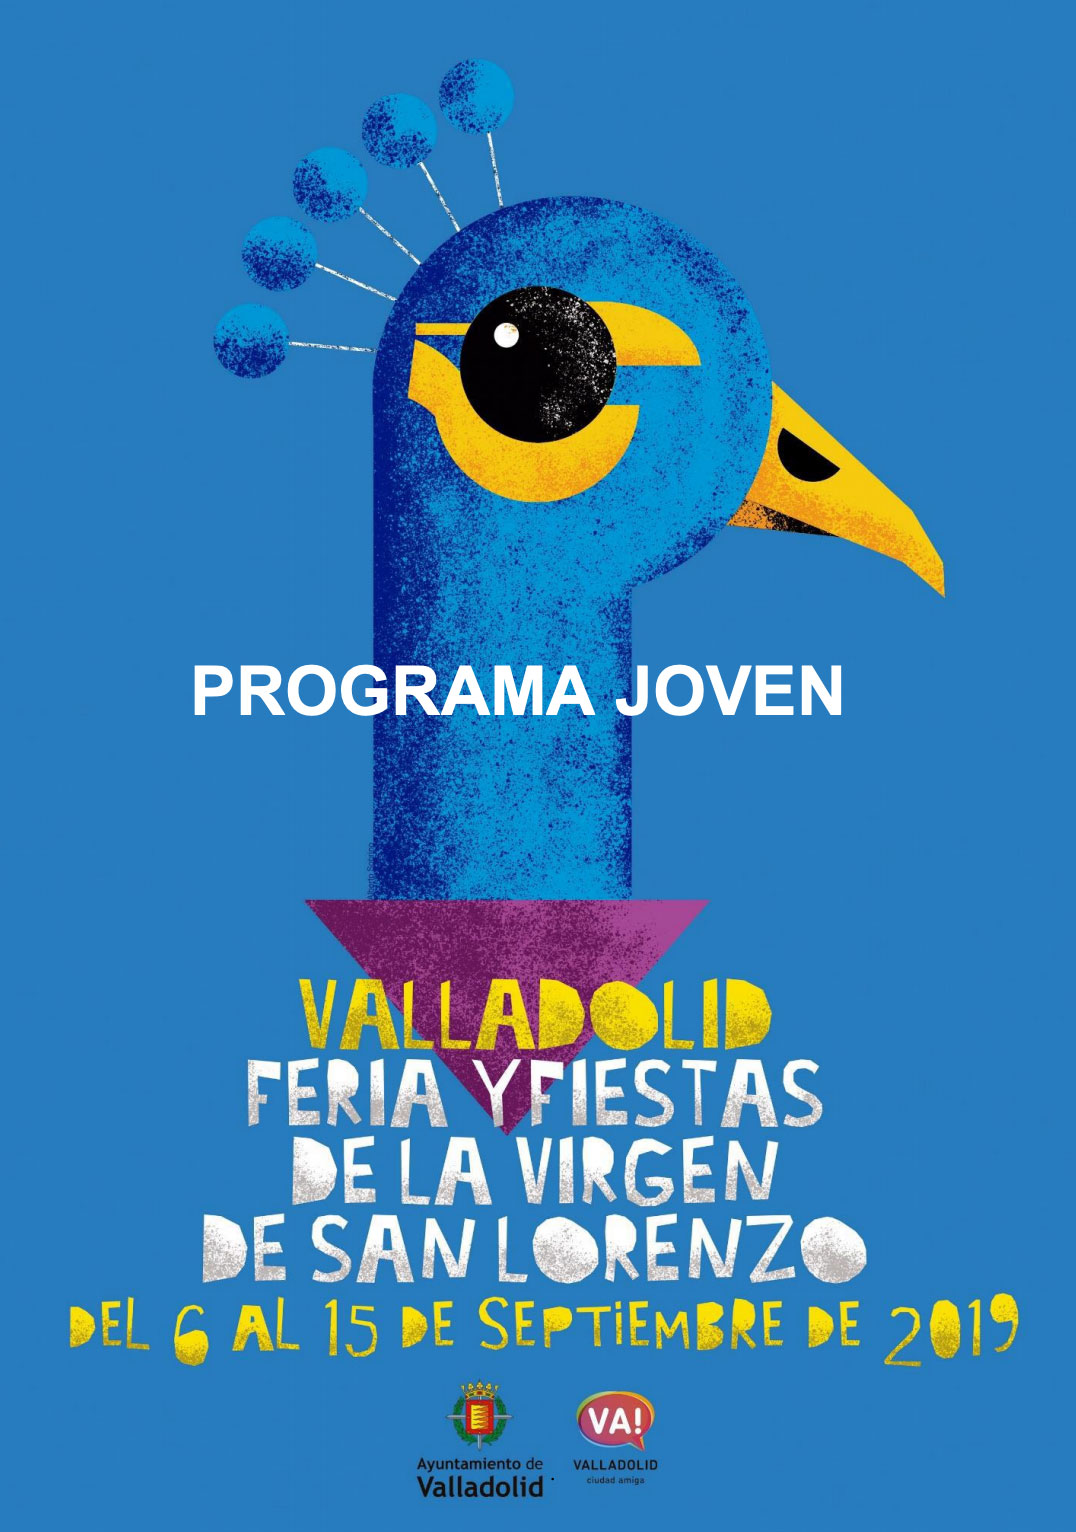 Ferias y fiestas Valladolid 2019